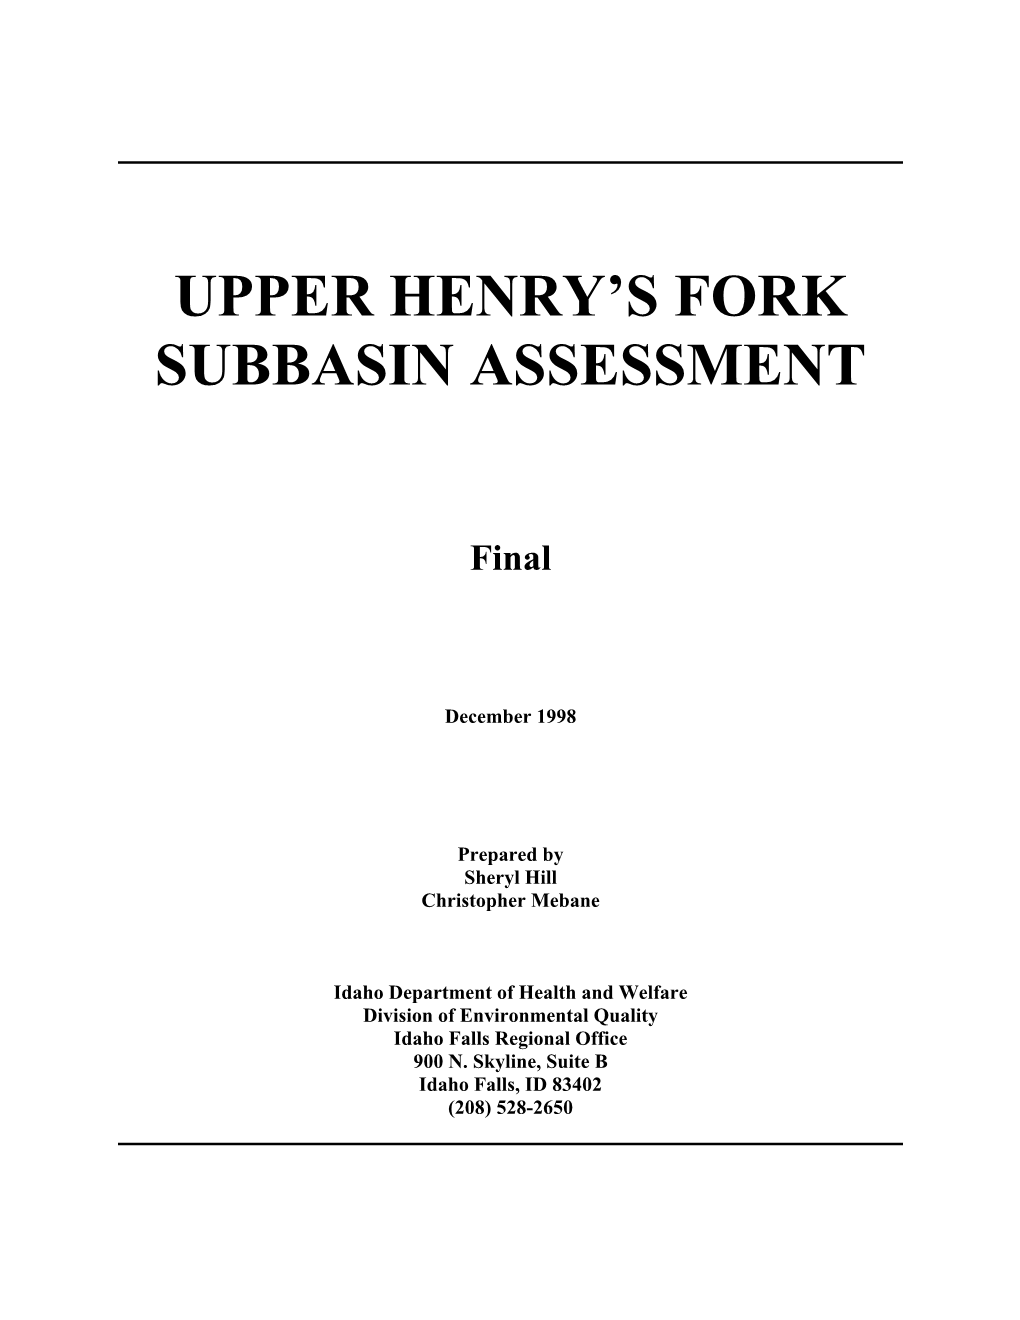 Upper Henry's Fork